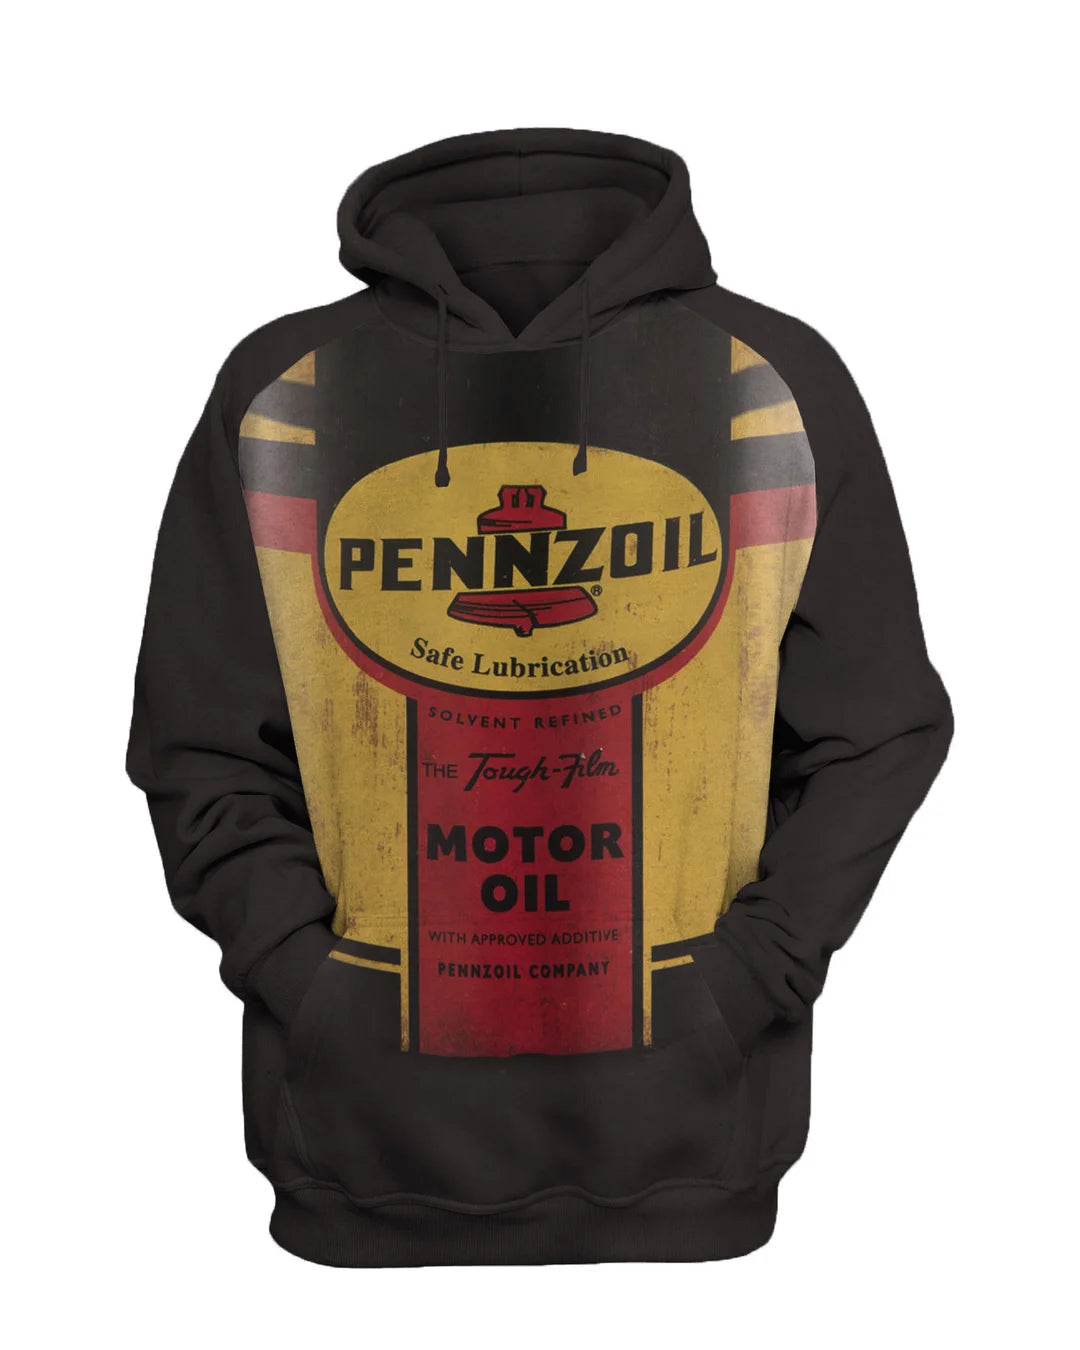 Pennzoil Mens Vintage Motor Oil Printed Sweatshirt Set